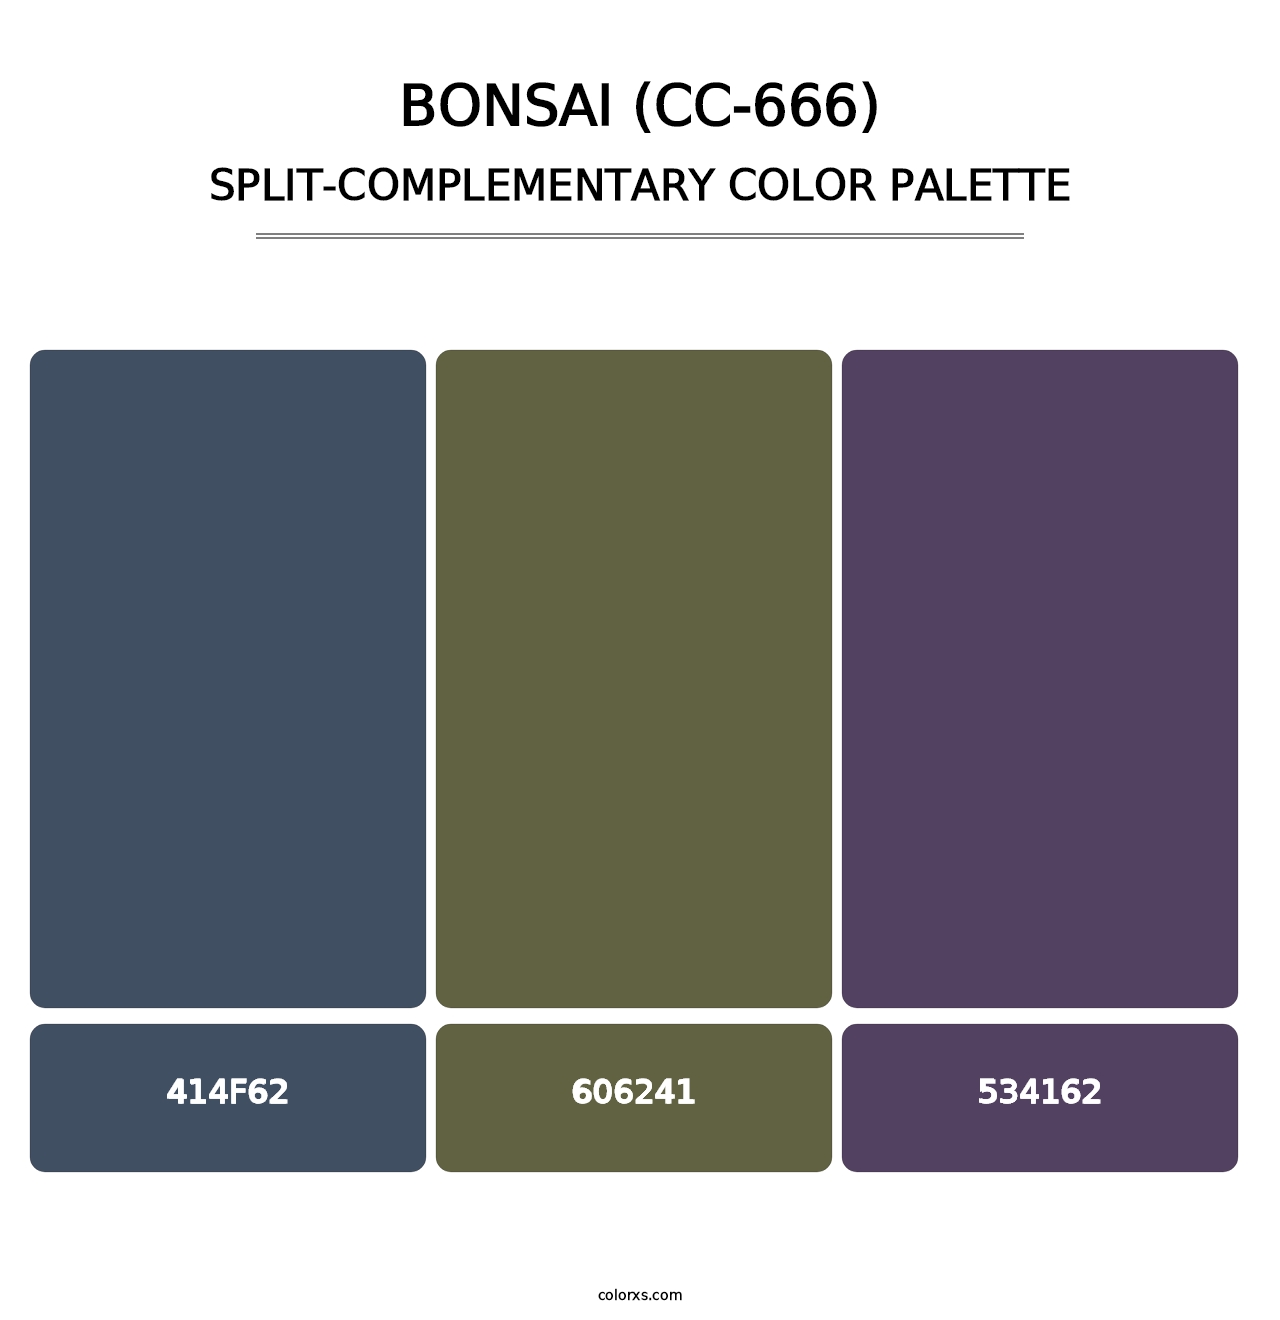 Bonsai (CC-666) - Split-Complementary Color Palette